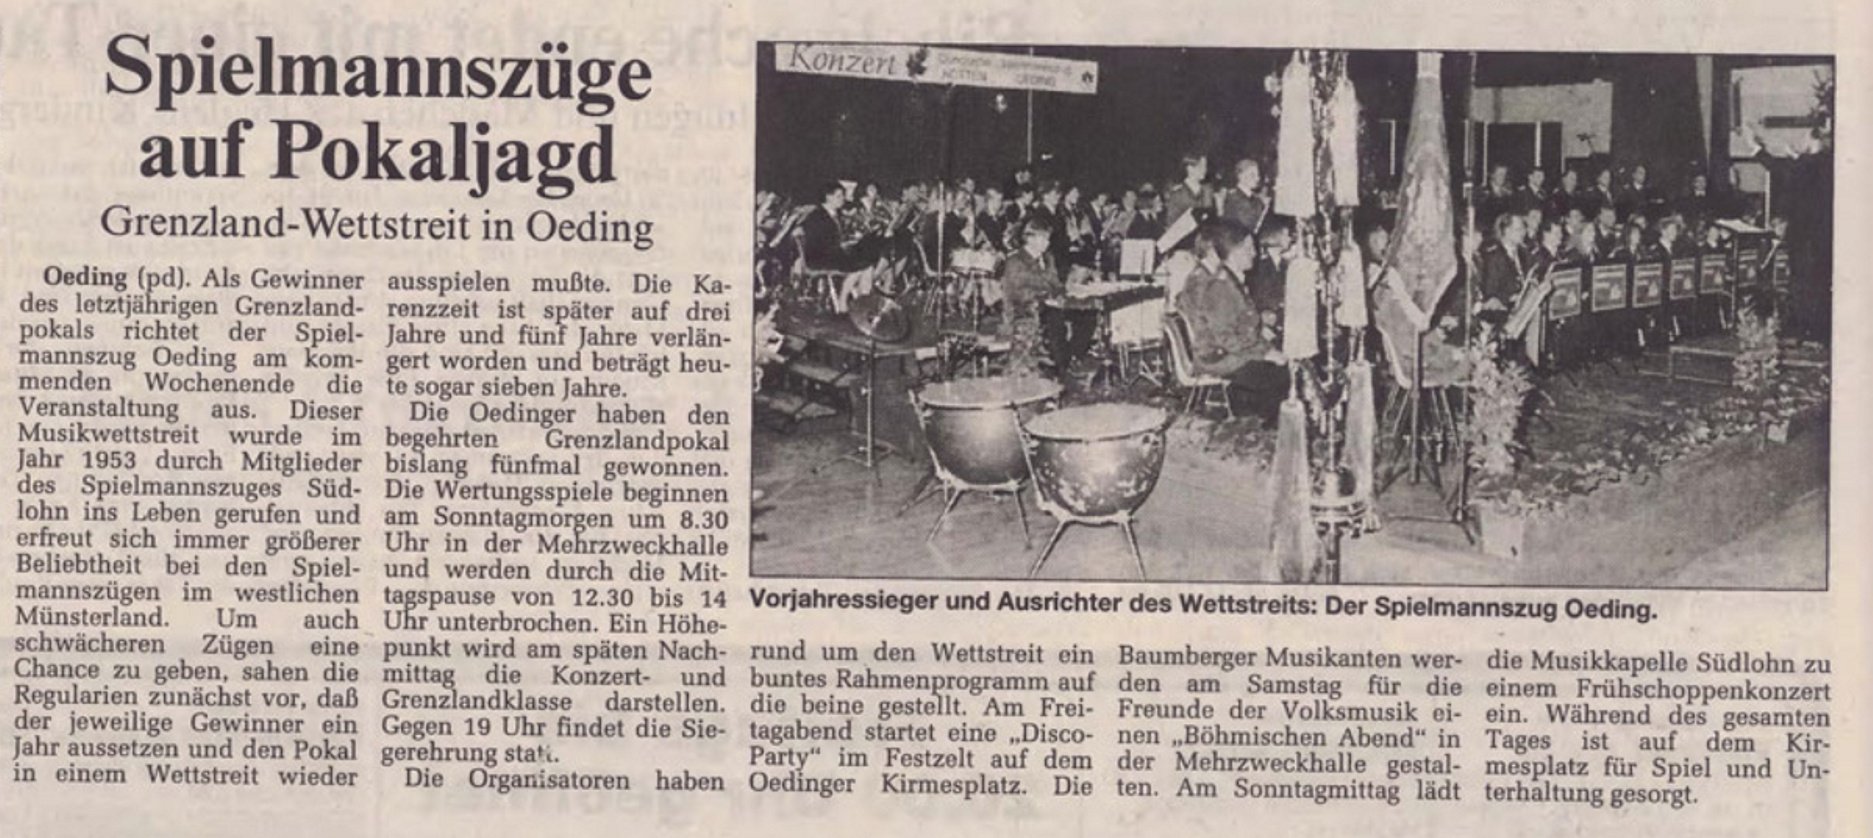 Grenzlandwettstreit in Oeding | Borkener Zeitung berichtet am 25.04.1997